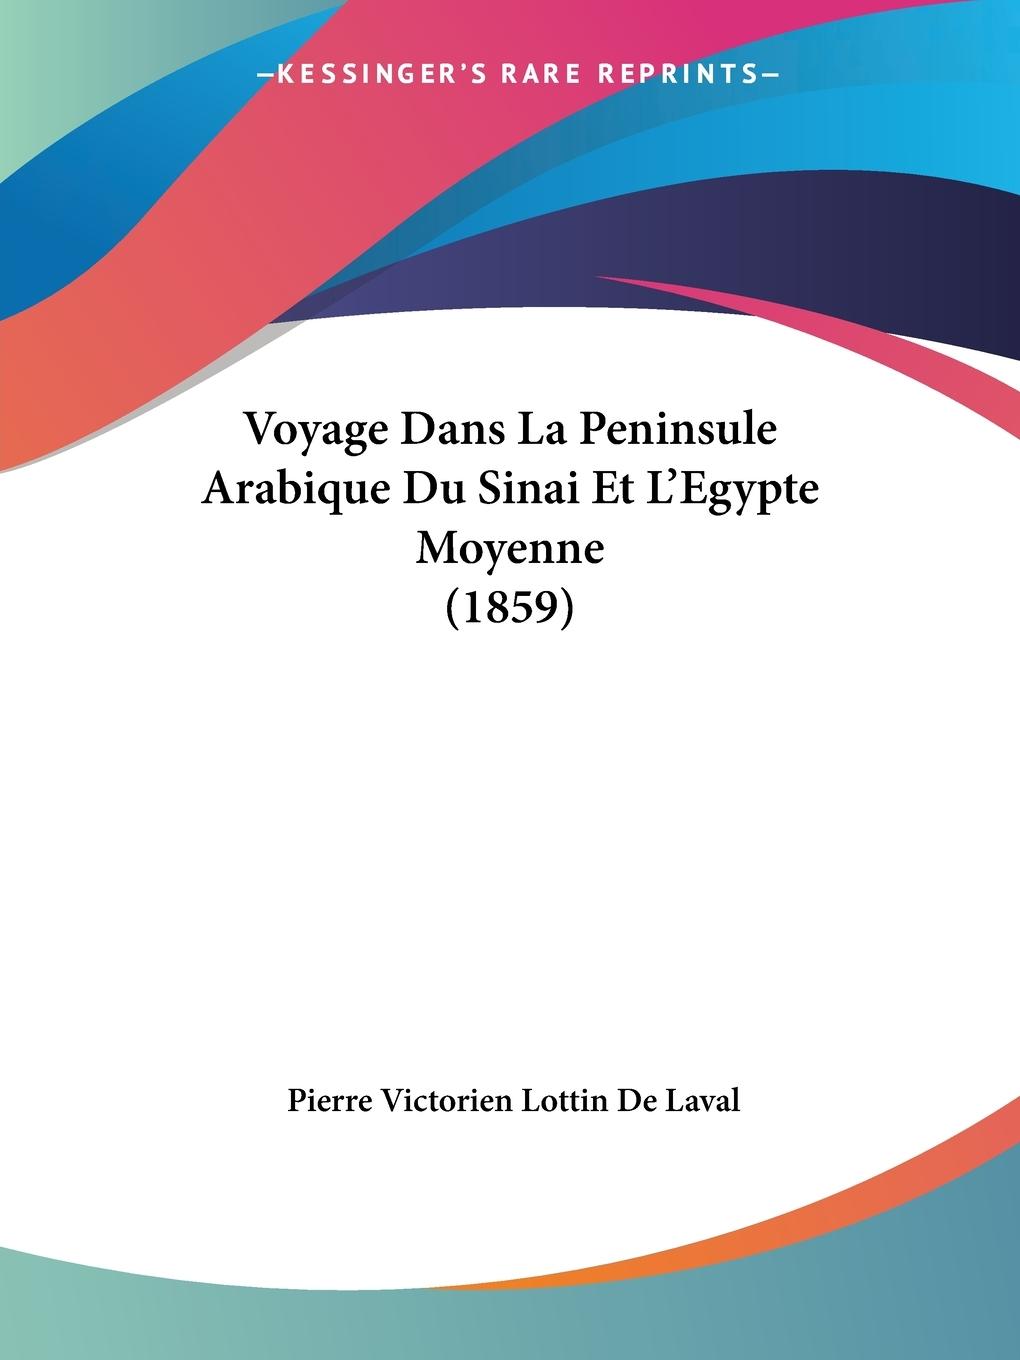 Voyage Dans La Peninsule Arabique Du Sinai Et L Egypte Moyenne (1859) - De Laval, Pierre Victorien Lottin